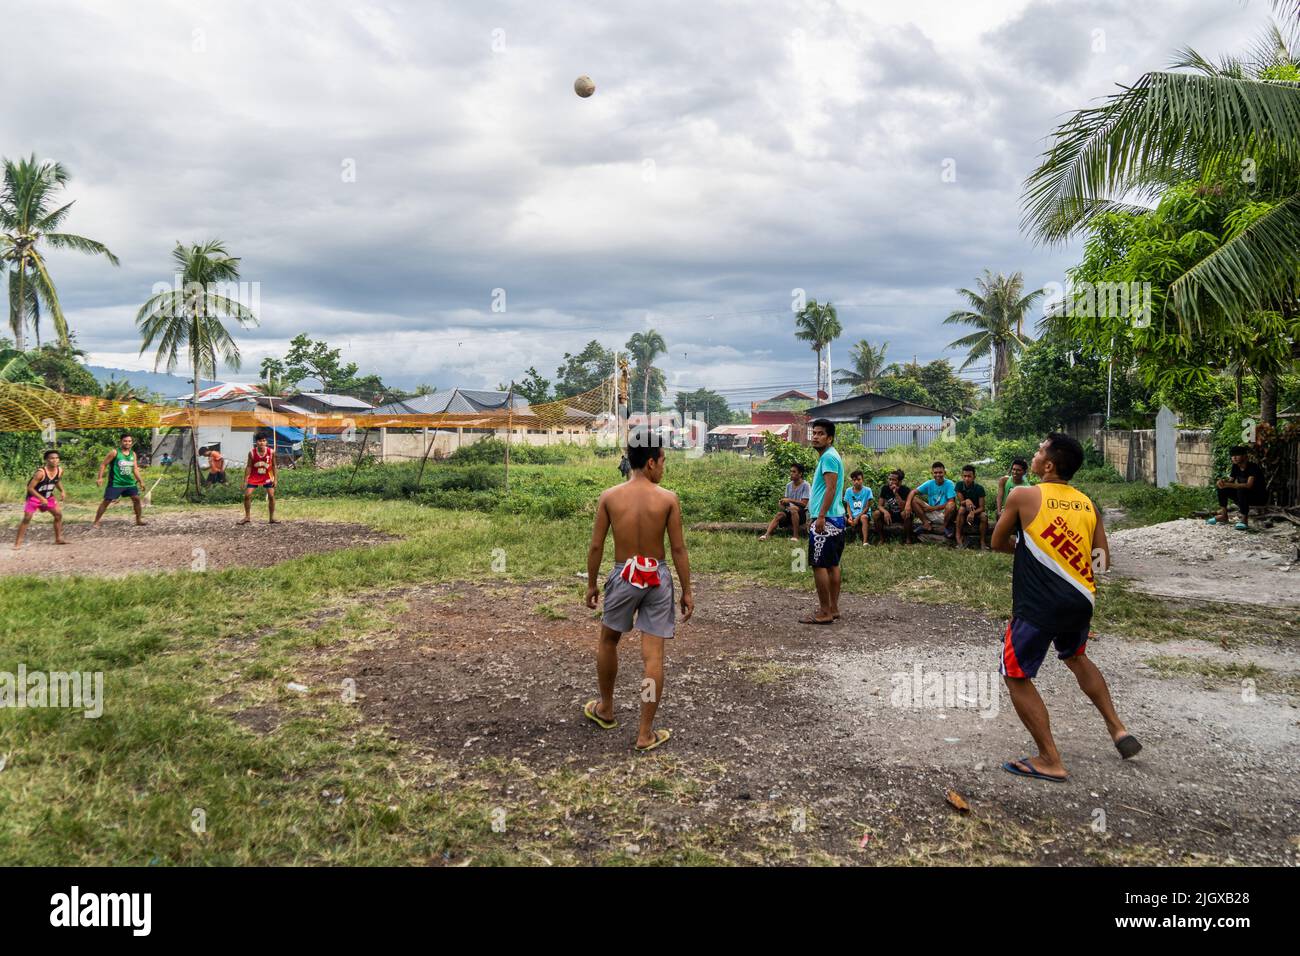 Moalboal, Filipinas. 13th de julio de 2022. Los lugareños juegan al voleibol por la tarde en un pueblo cerca de la playa. Vida diaria en el distrito de Moalboal, Cebu, Filipinas. La zona, antes conocida por su buceo y sus enormes nubes de sardinas, ha luchado para reactivar el turismo incluso después de levantar las restricciones a los viajes de los covid-19 debido a los daños críticos en la infraestructura causados por el tifón Rai, también conocido como Super tifón Odette, que ha dejado gran parte de la zona diezmada y luchando por reconstruir. Crédito: SOPA Images Limited/Alamy Live News Foto de stock